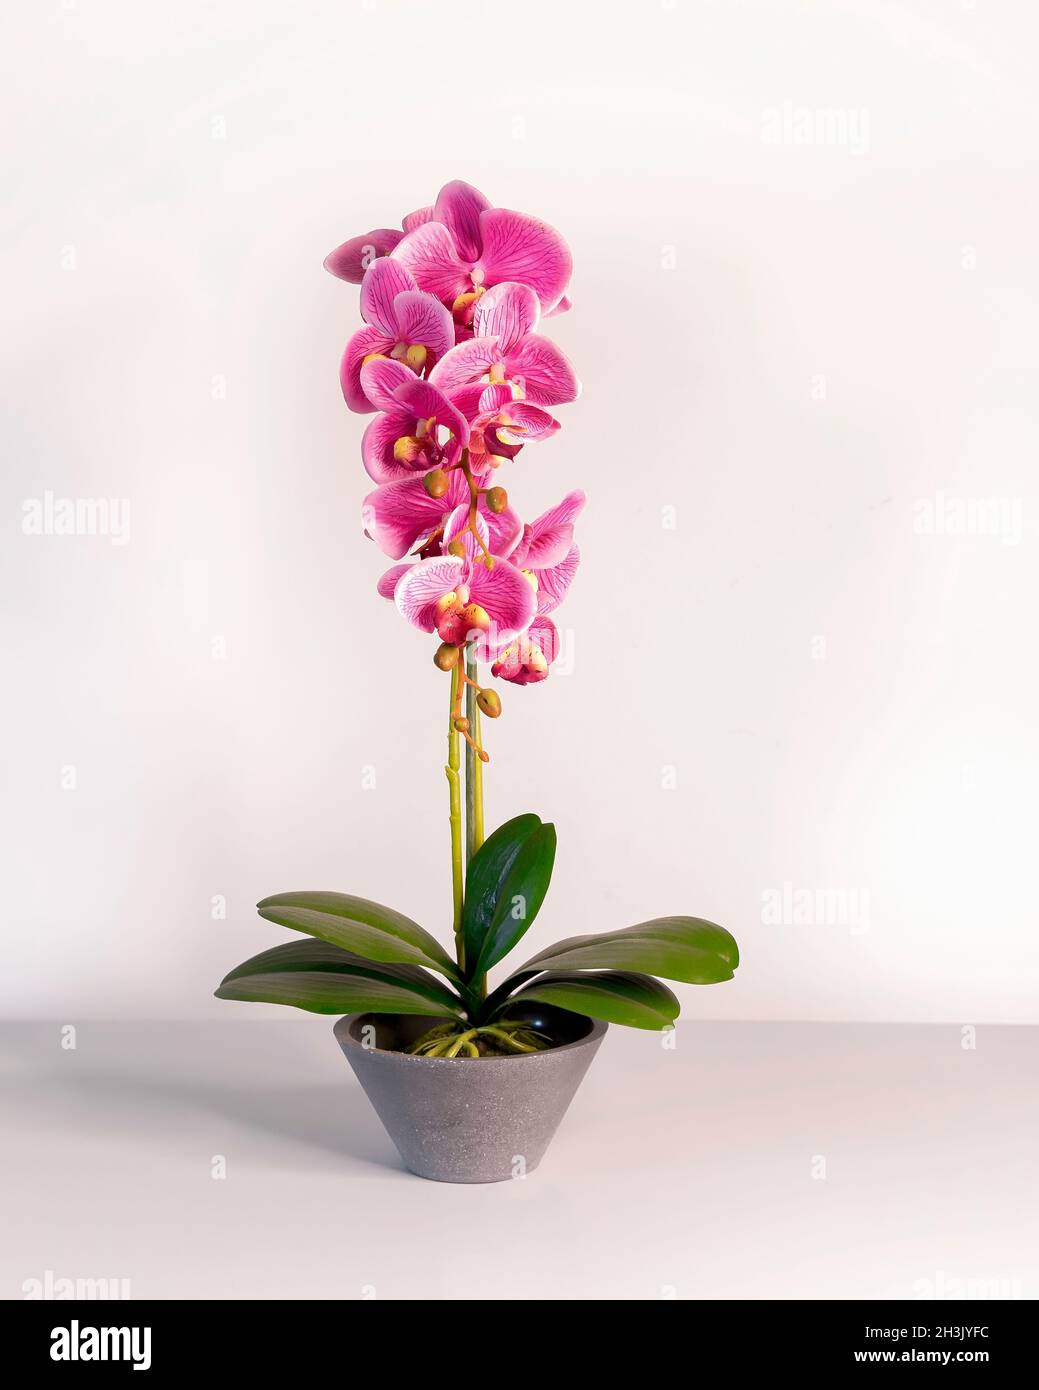 Orchidea rosa. Isolato. Disposizione floreale per la vita artificiale come fiori di orchidea in vaso grigio di ceramica fiore. Immagine stock. Foto Stock